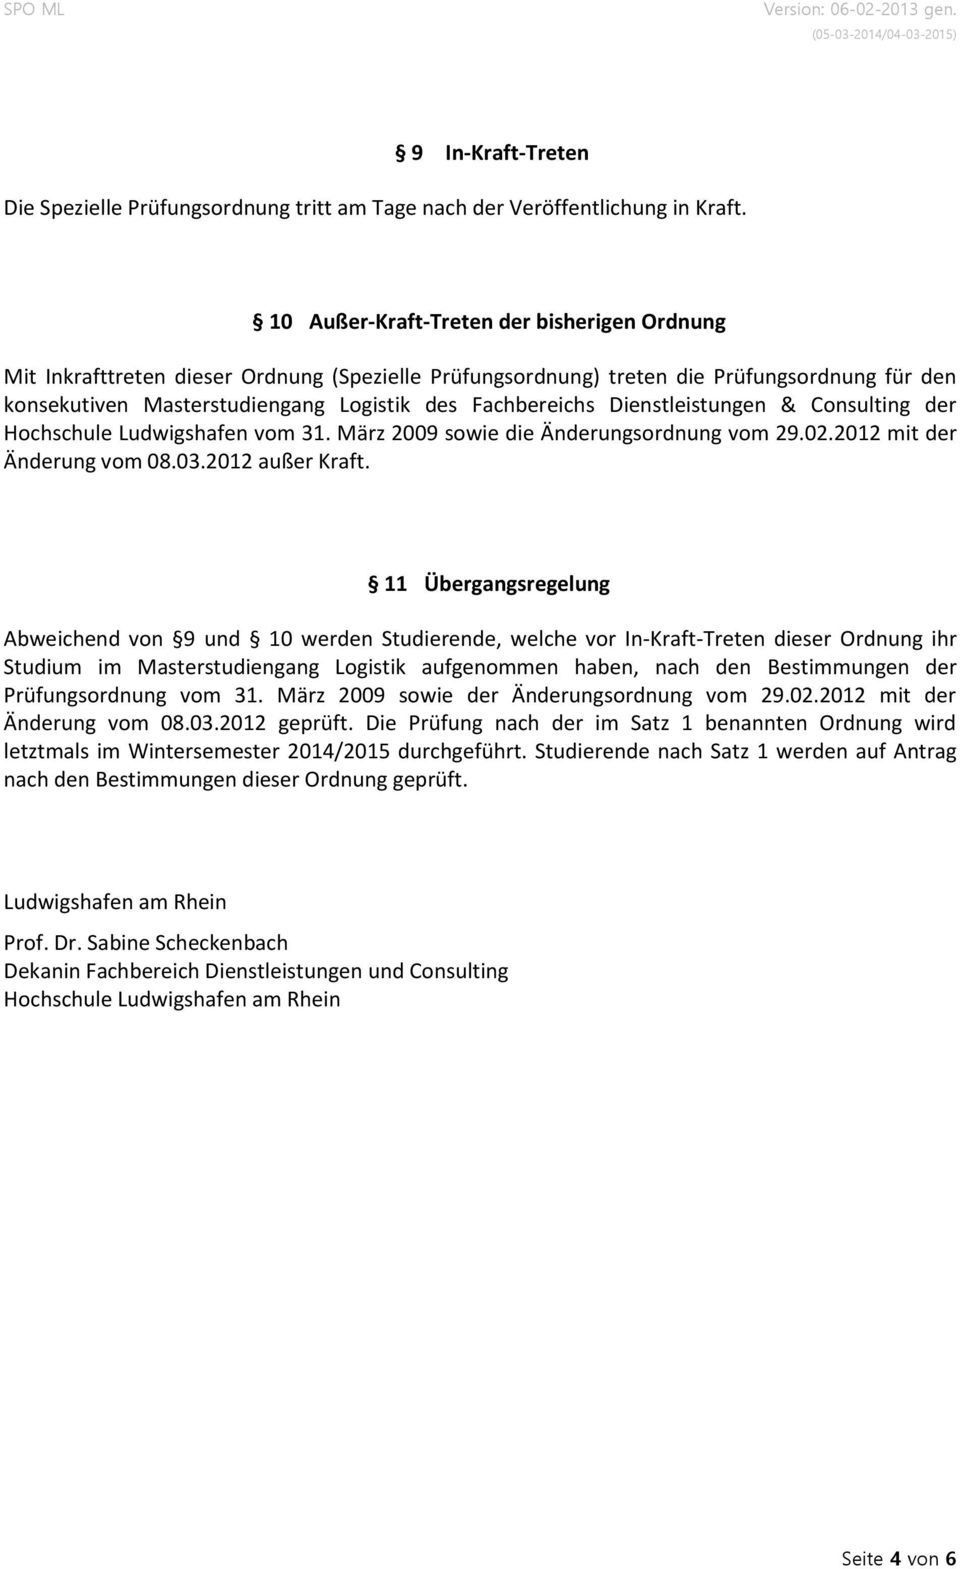 Dienstleistungen & Consulting der Hochschule Ludwigshafen vom 31. März 2009 sowie die Änderungsordnung vom 29.02.2012 mit der Änderung vom 08.03.2012 außer Kraft.